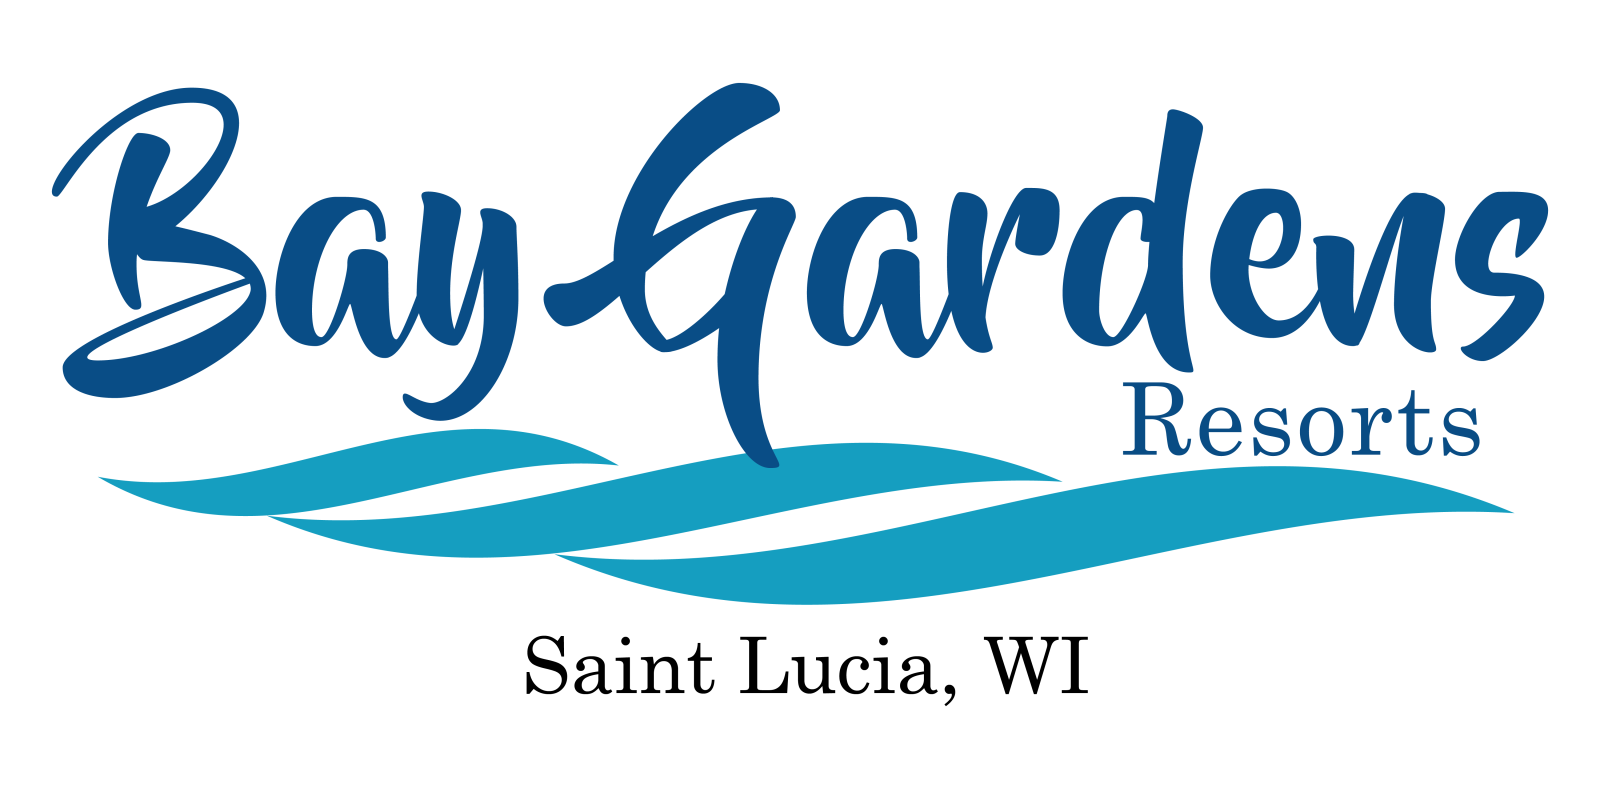 Bay Gardens Resorts